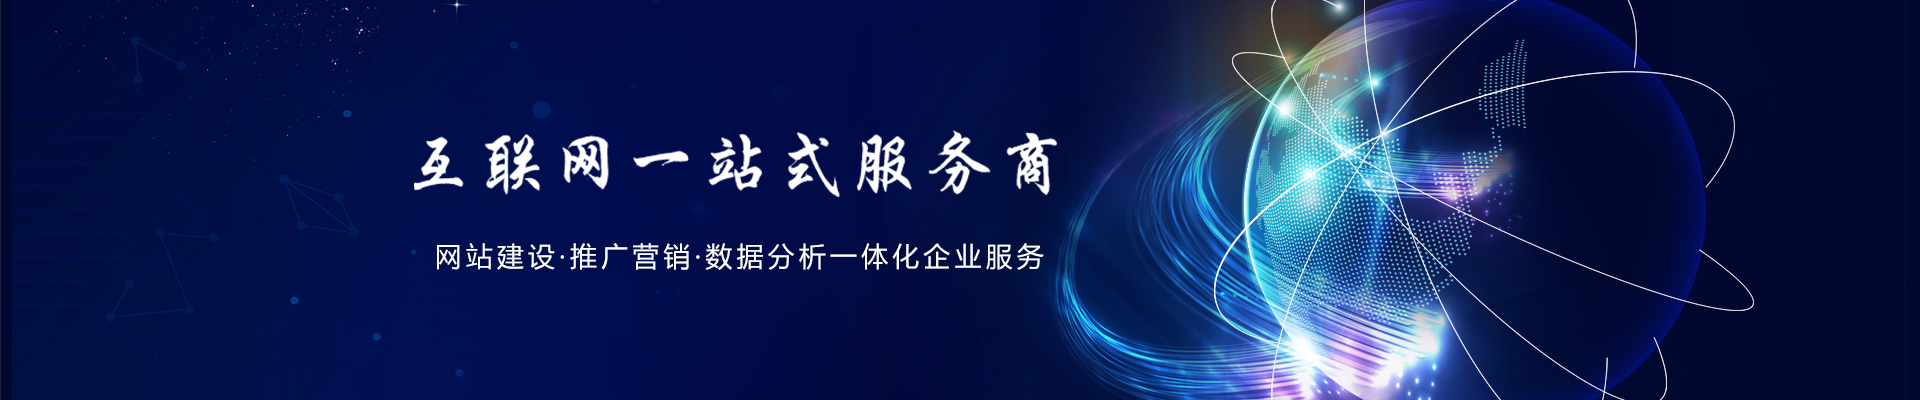 云南西雙版納企業視頻運營公司 云南闊點科技供應